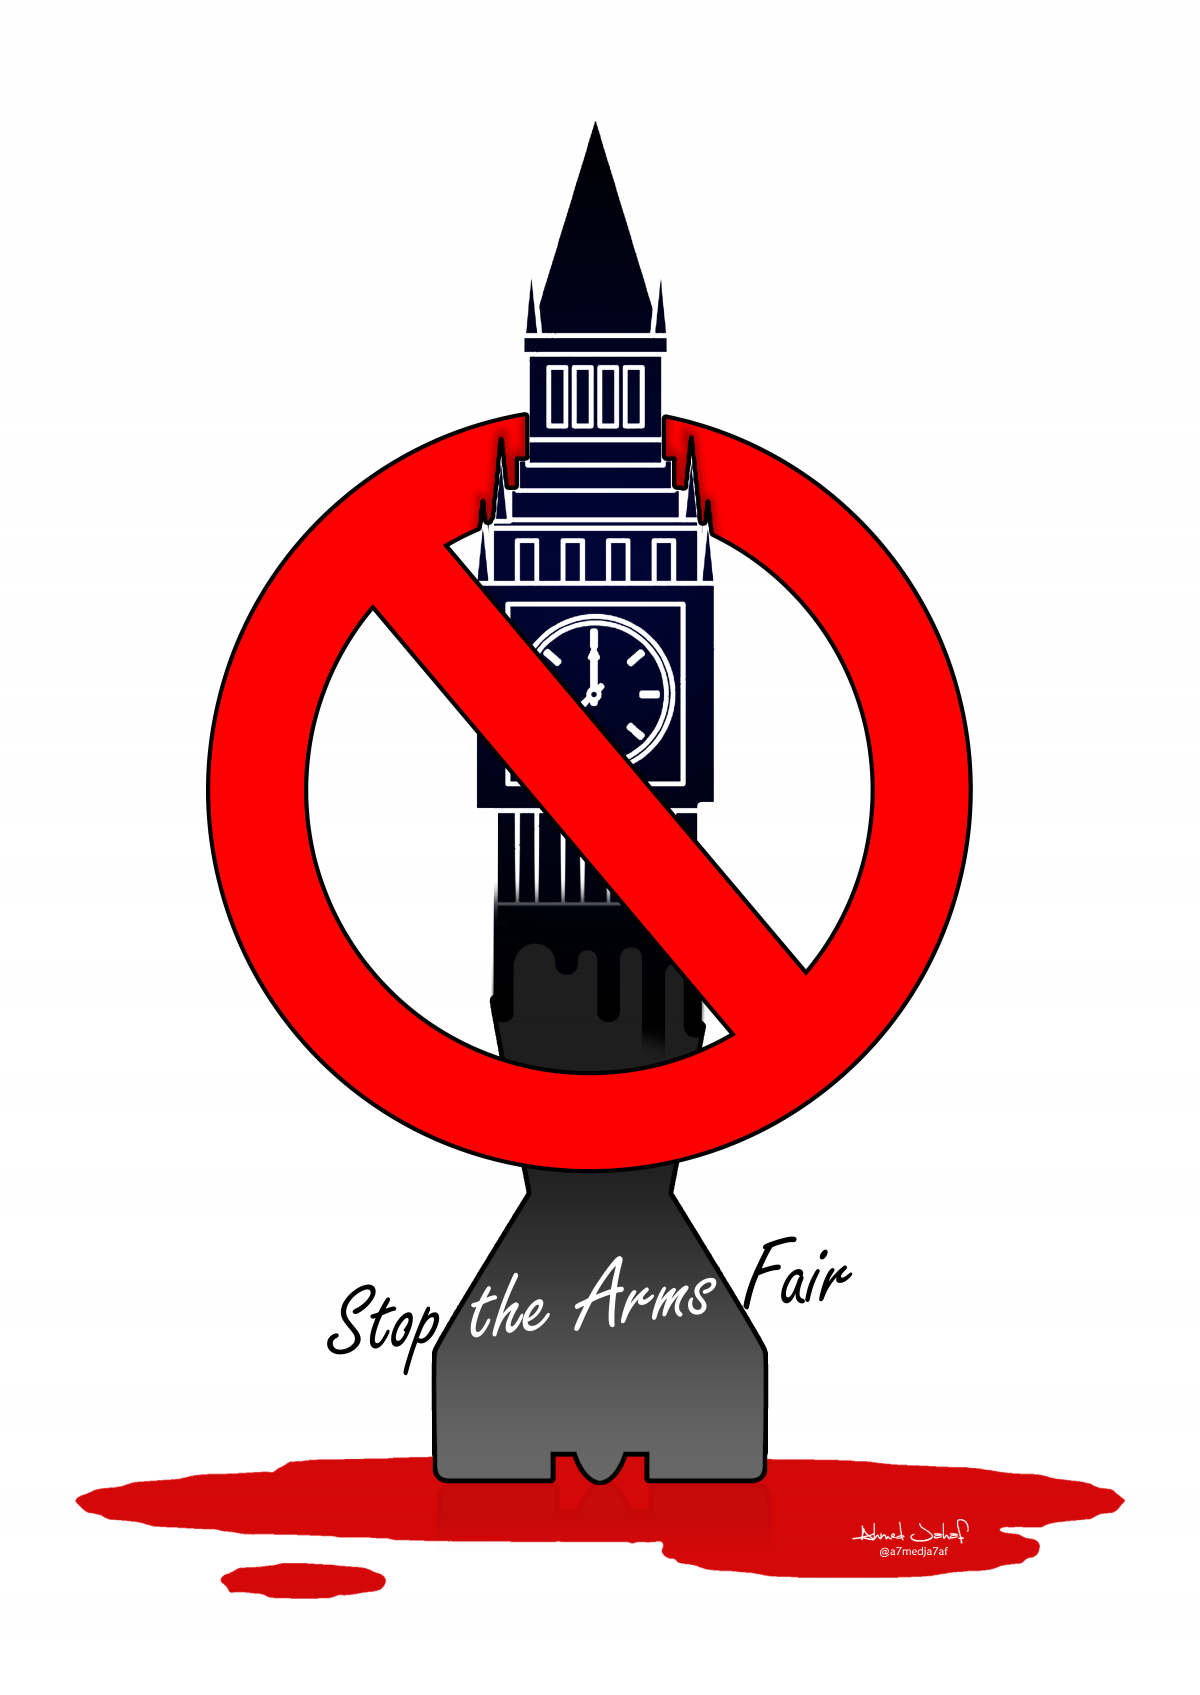 Stop the Arms Fair